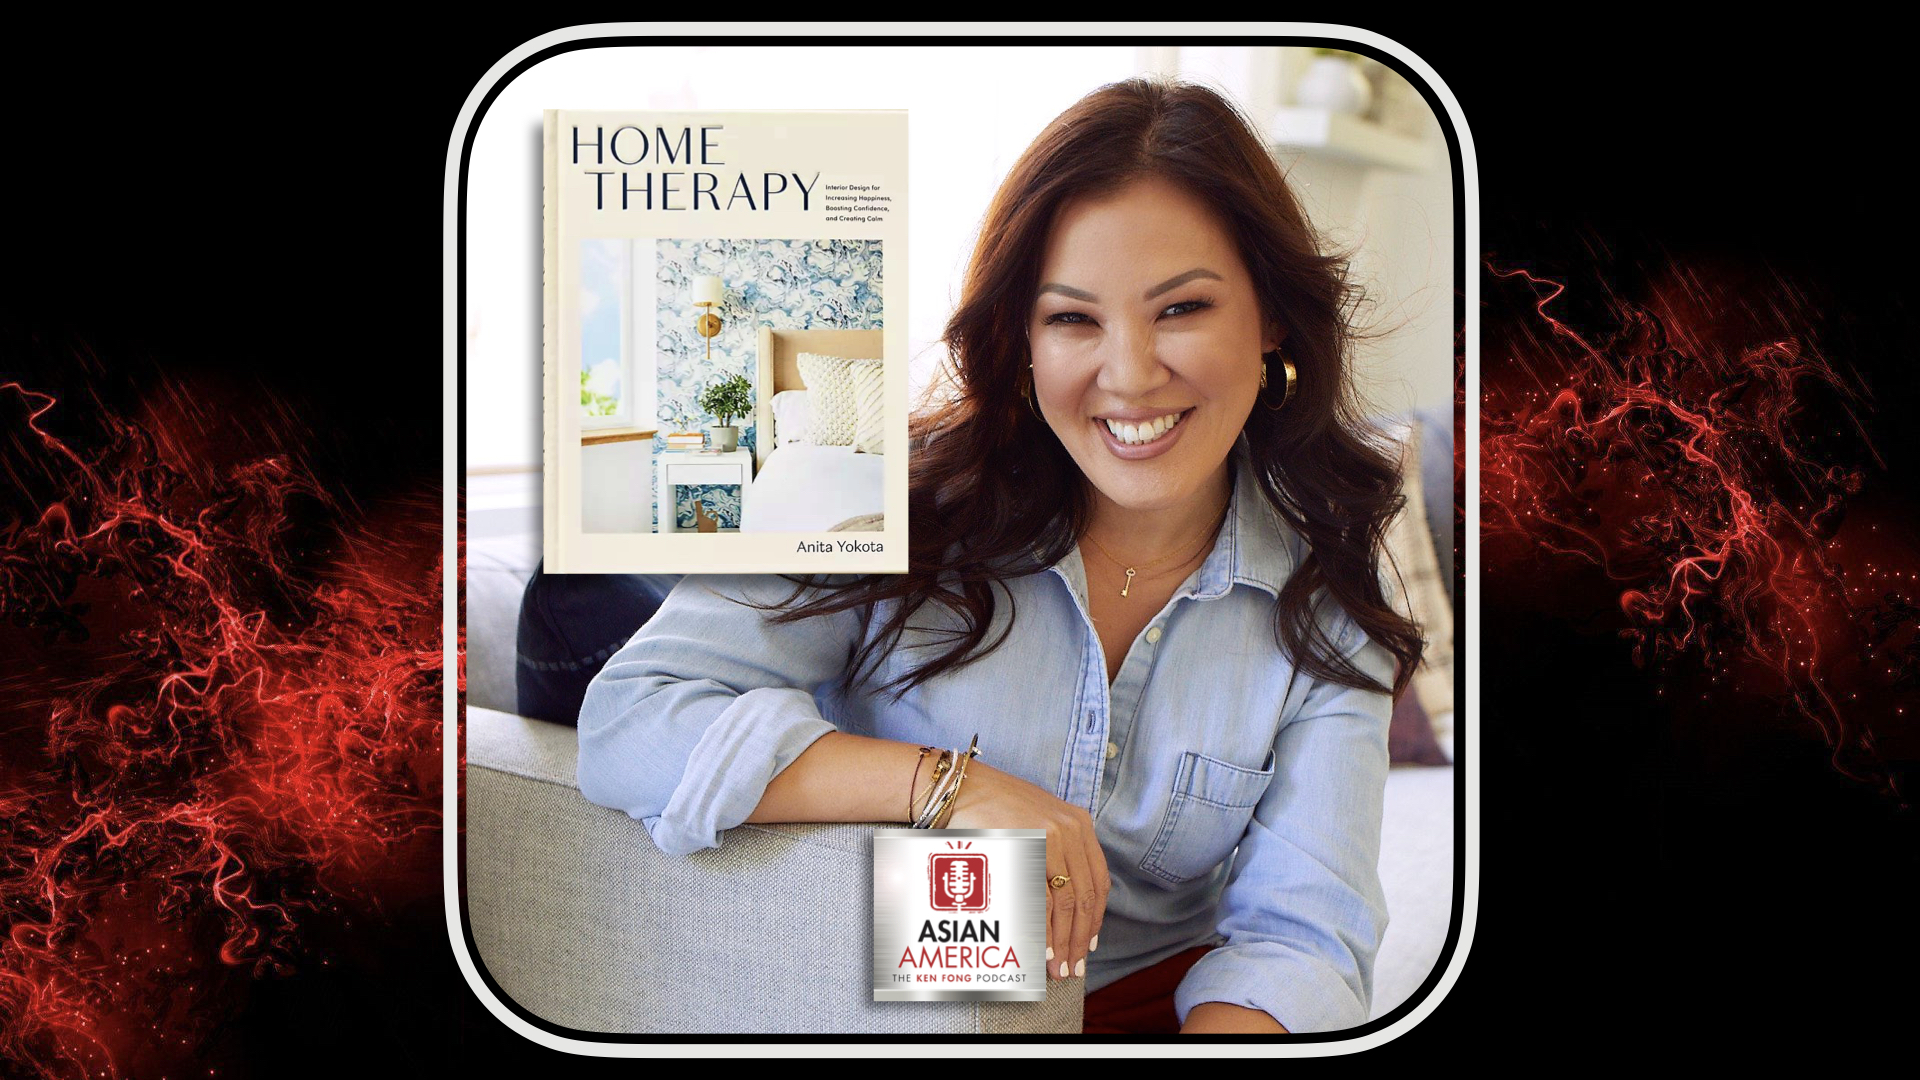 Ep 403: Anita Yokota on the Benefits of Doing “Home Therapy”